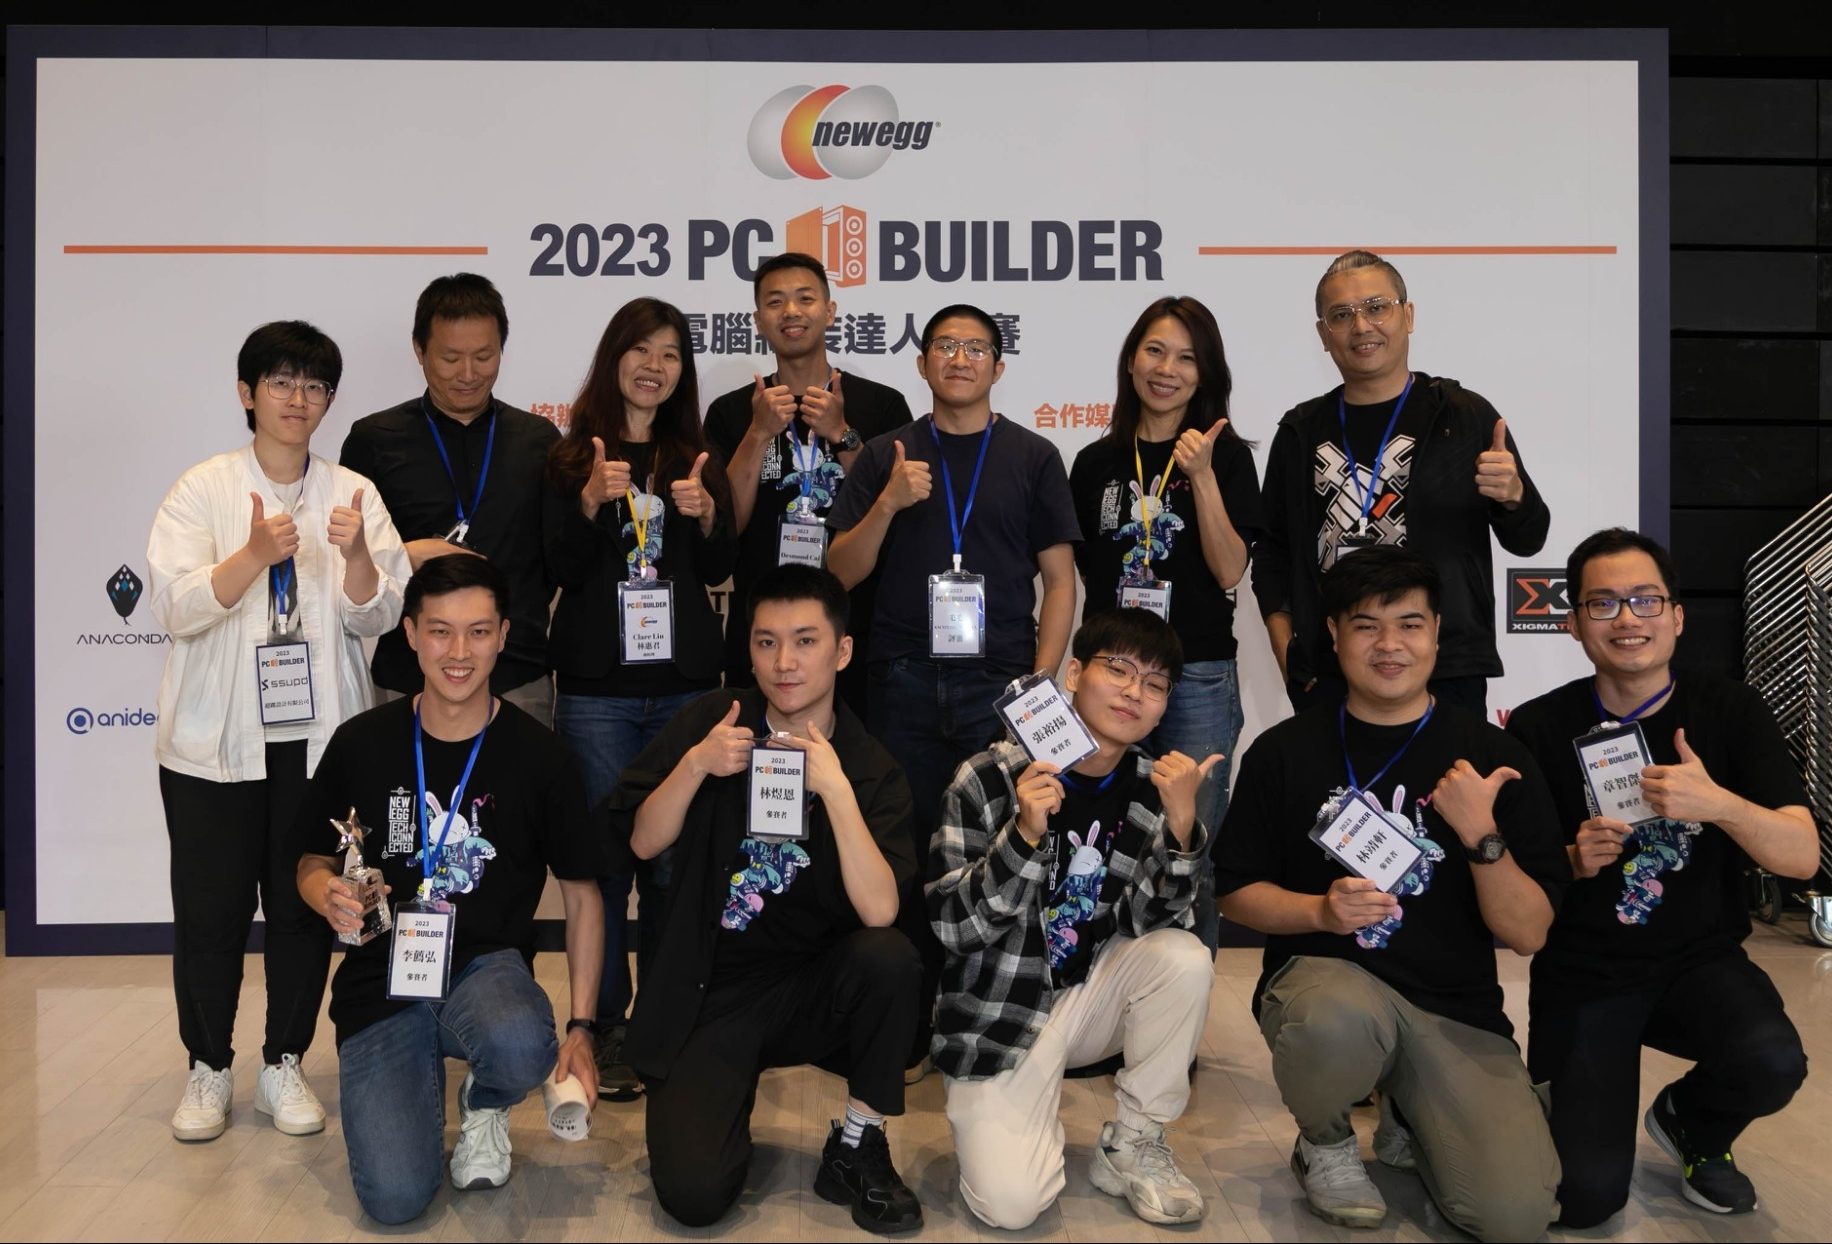 2023/4/22 Newegg PC Builder 電腦組裝達人競賽 – 媒體報導 #1